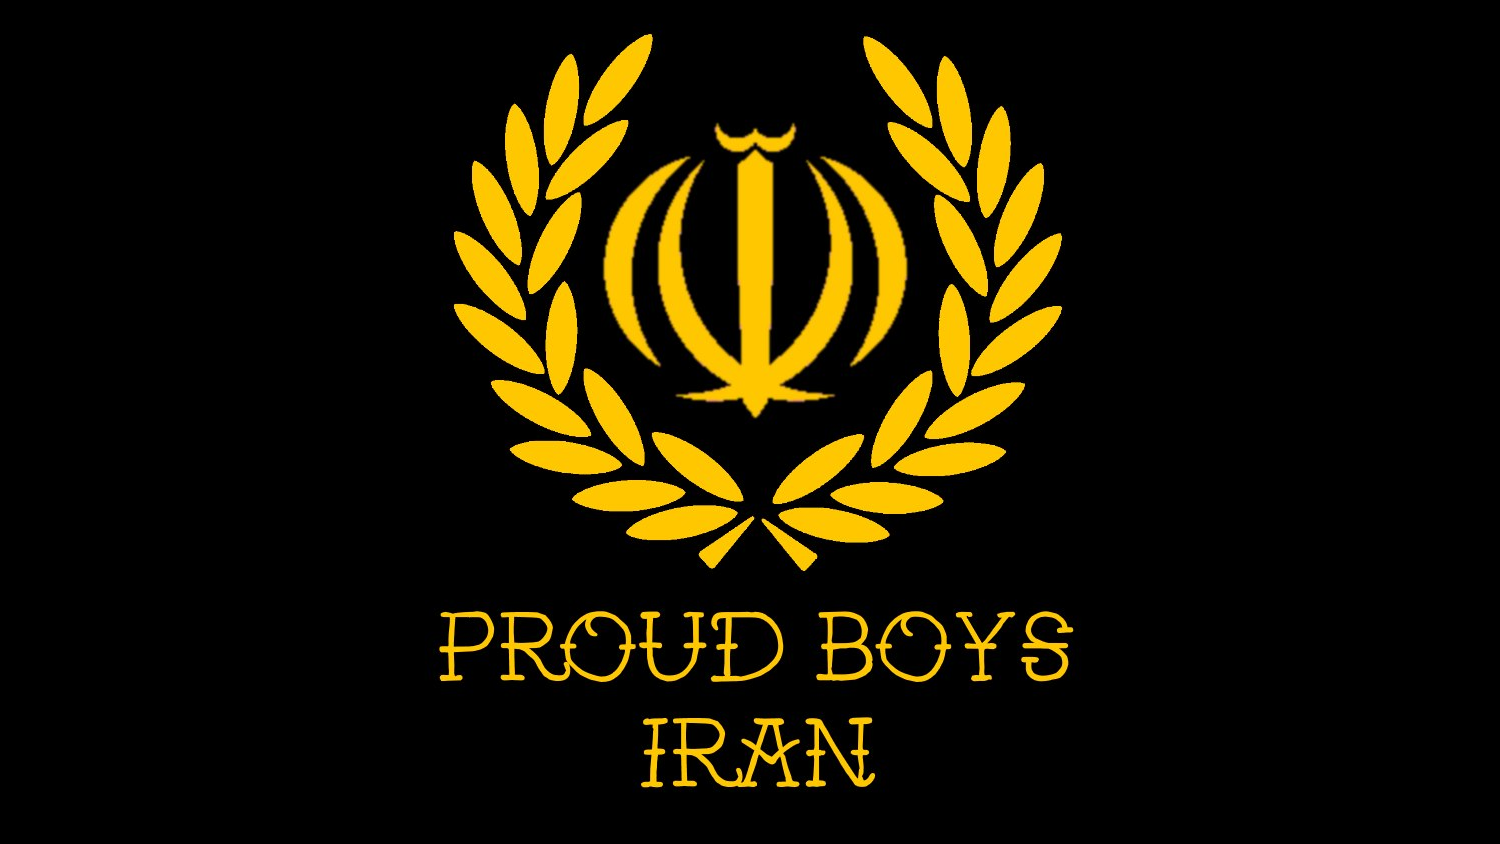 IranPB